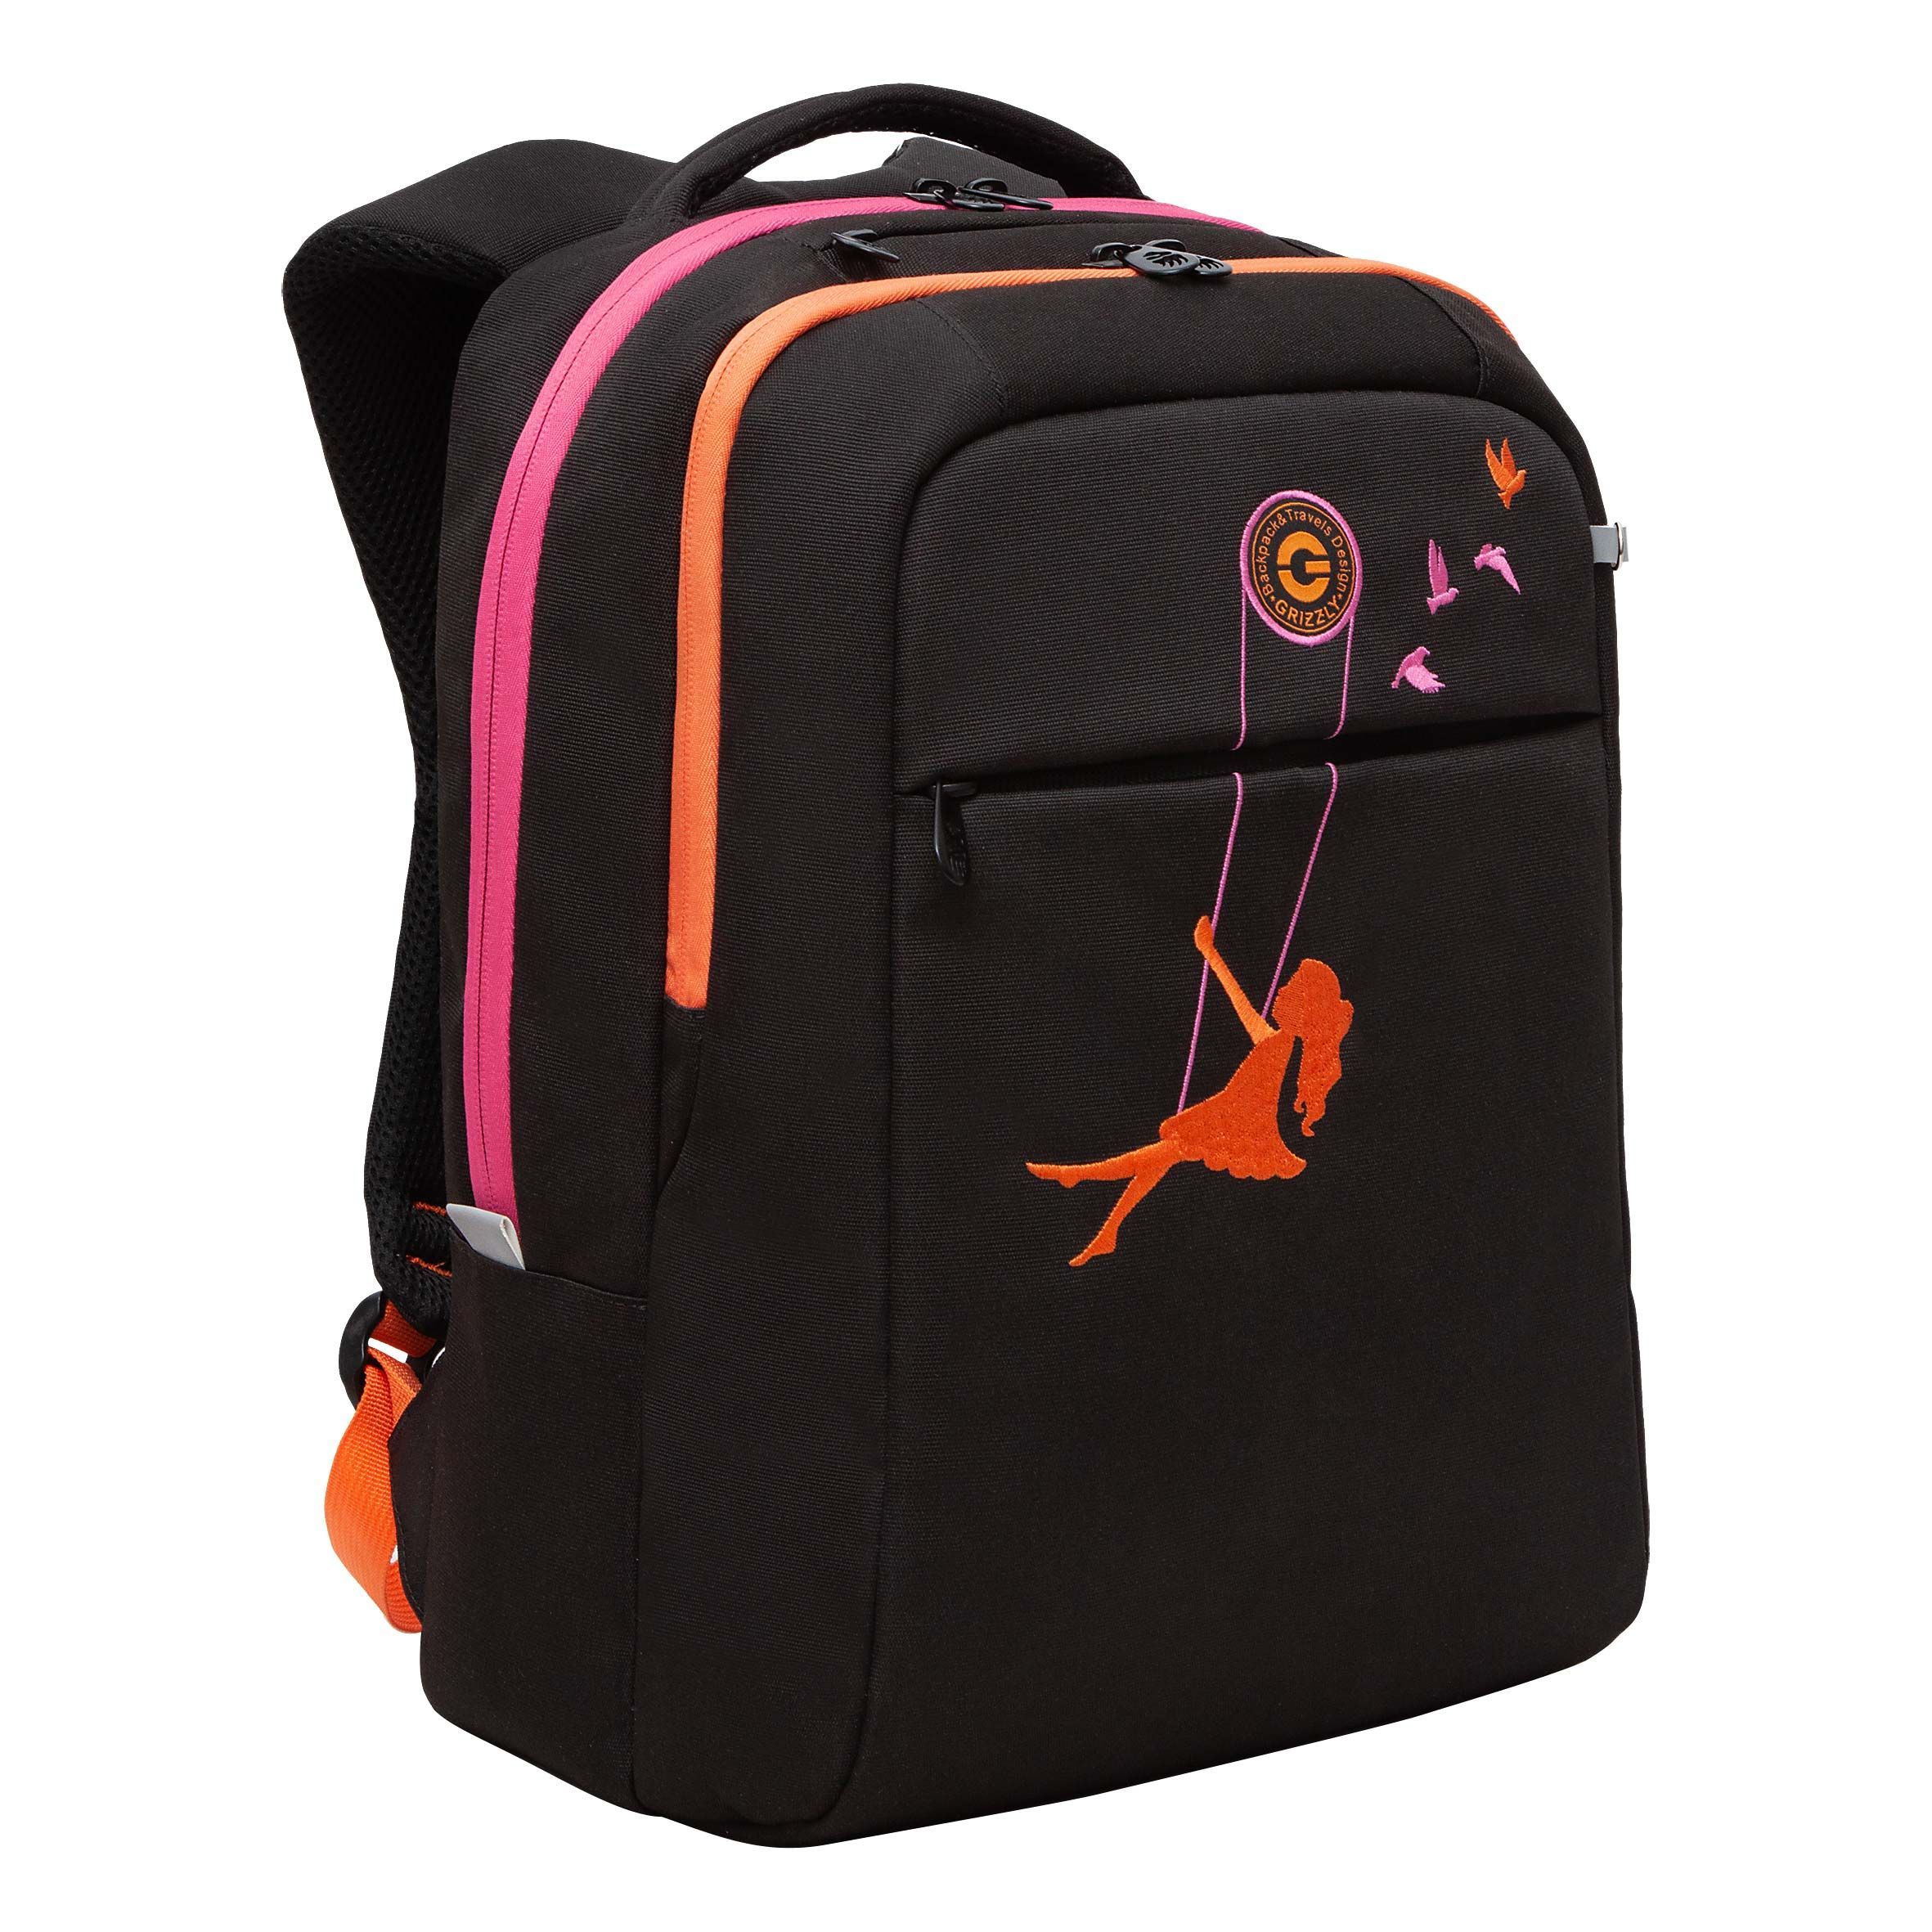 Рюкзак GRIZZLY RD-344-2 молодежный на каждый день вместительный черный-оранжевый рюкзак молодежный из текстиля на молнии 4 кармана оранжевый